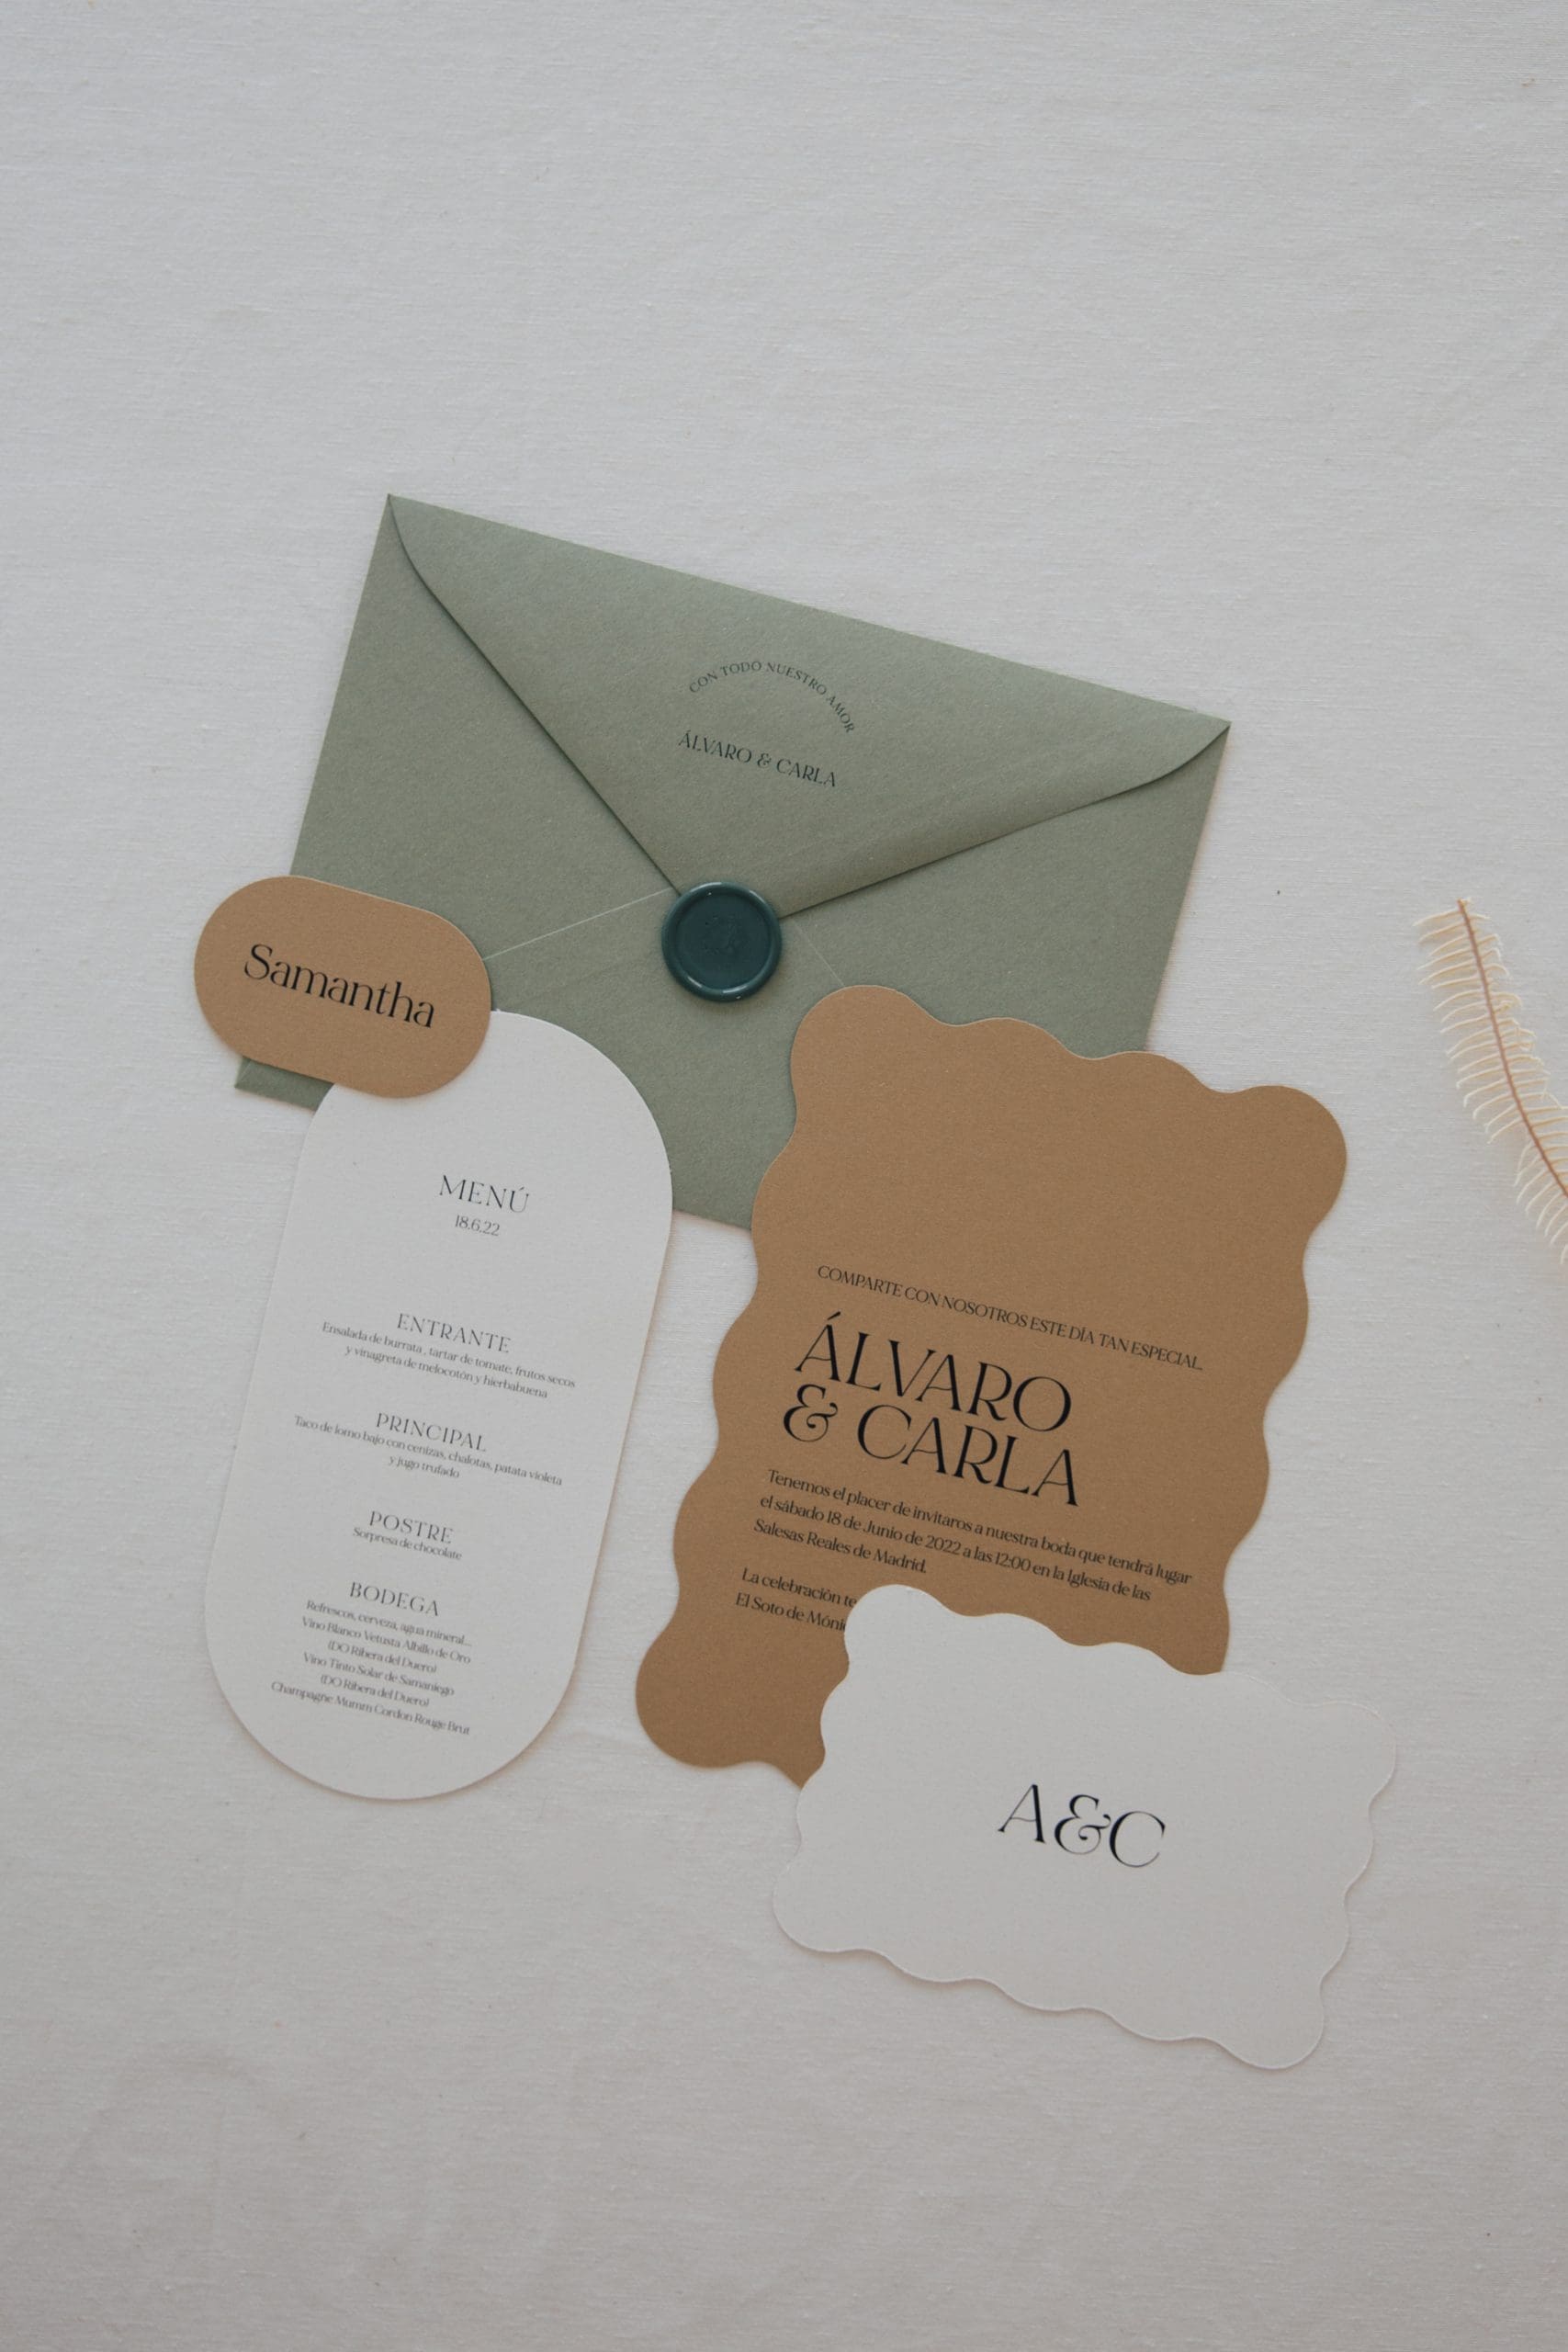 Colección completa 'biscuit' de papelería de boda de Bouclé Weddings, expertos wedding planners, con diseño único y estética cuidada.